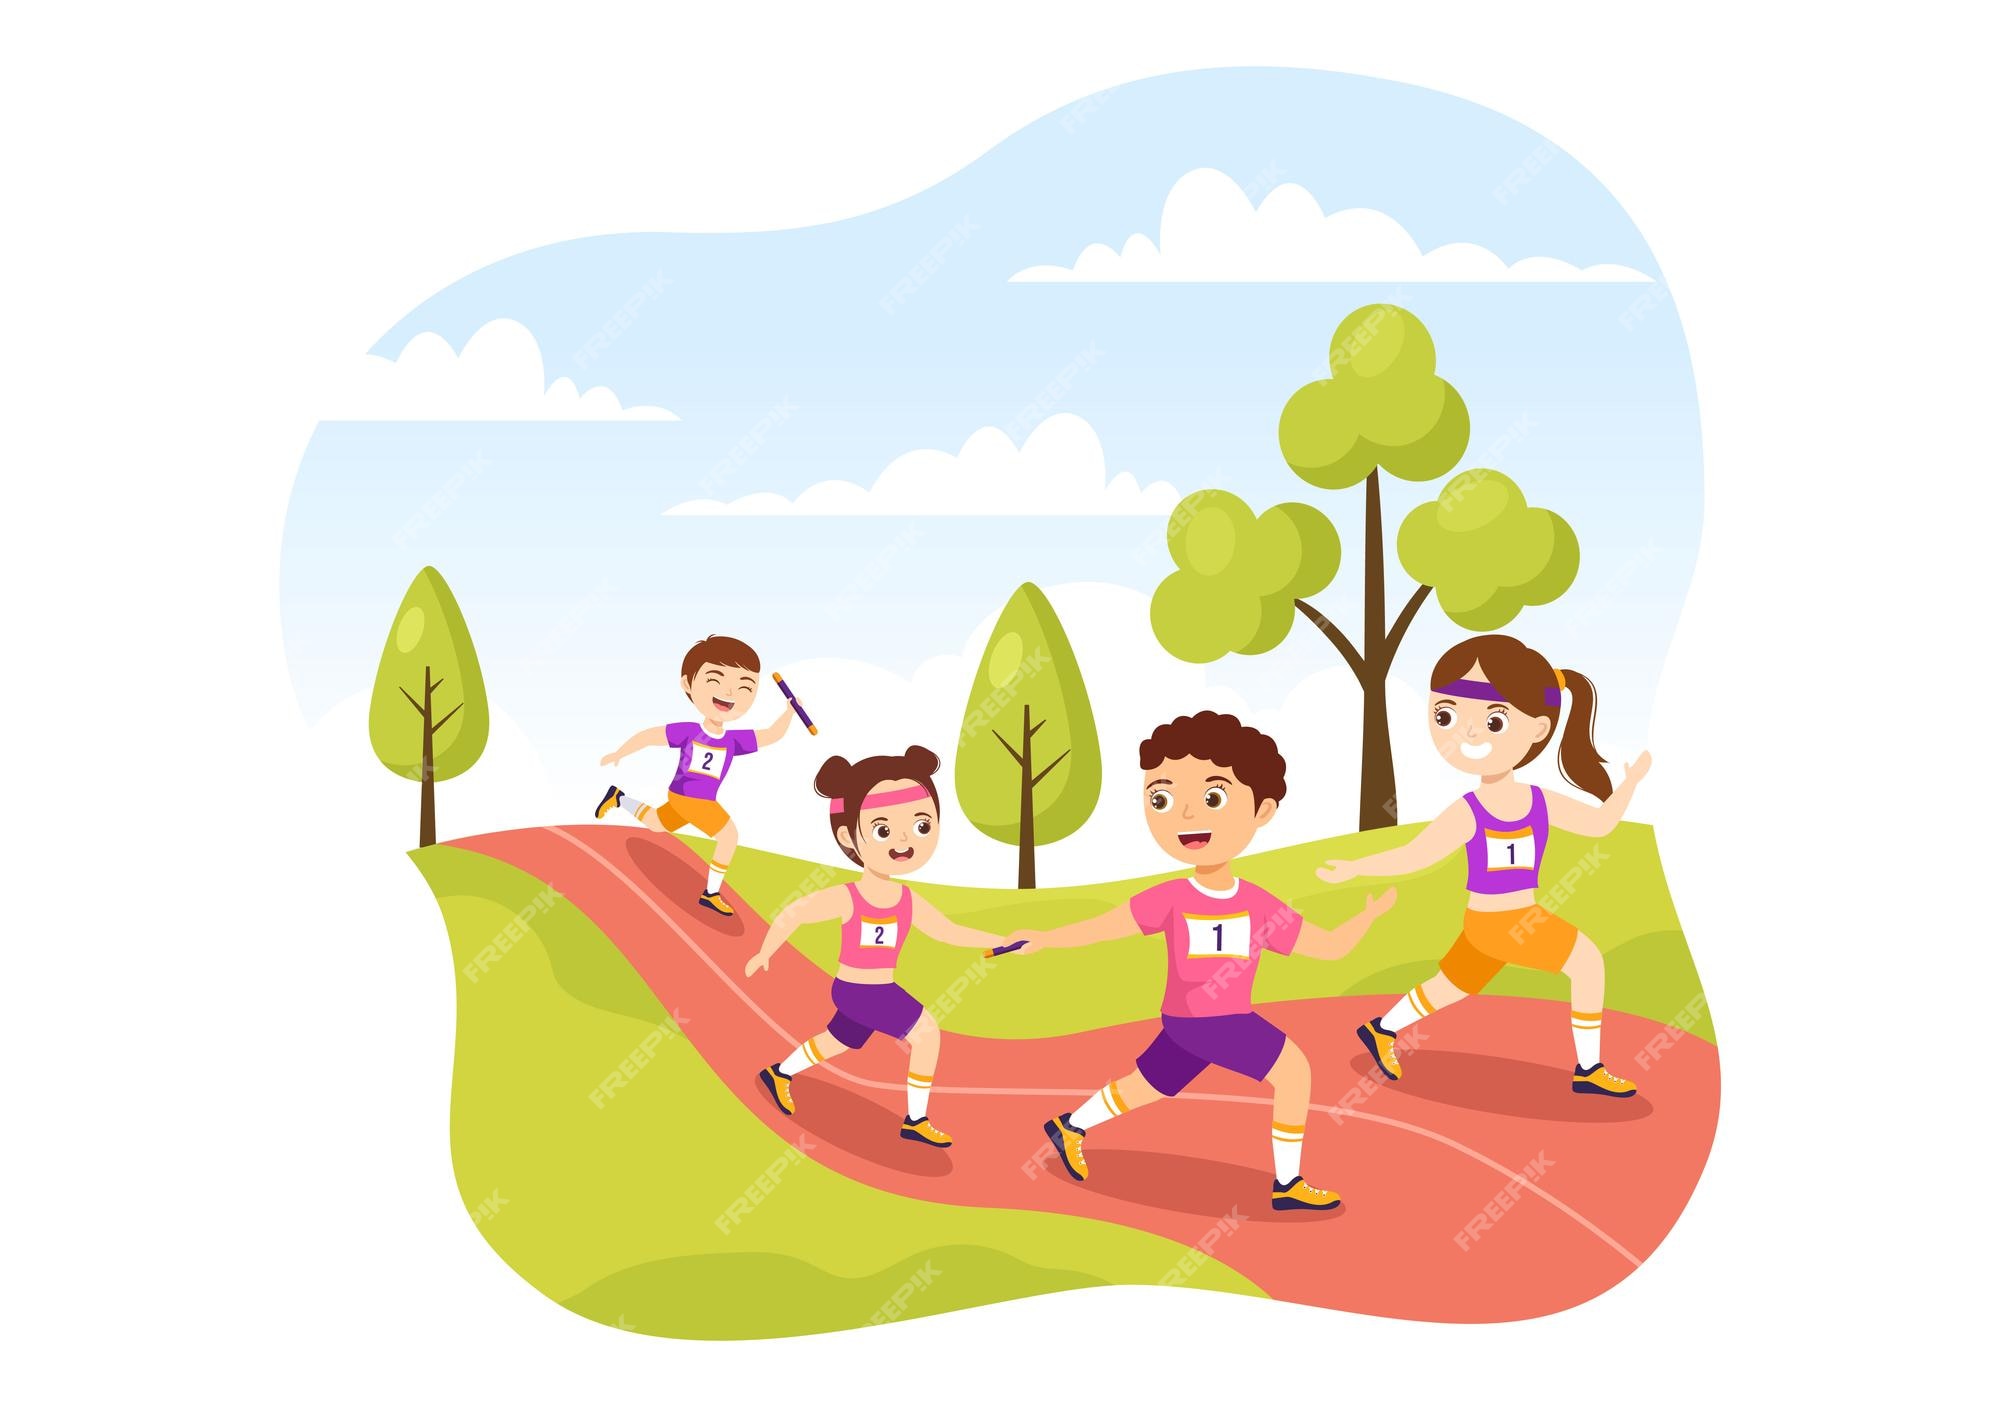 Carrera de relevos ilustración deportiva para niños pasando el testigo a  sus compañeros de equipo hasta llegar a la línea de meta | Vector Premium